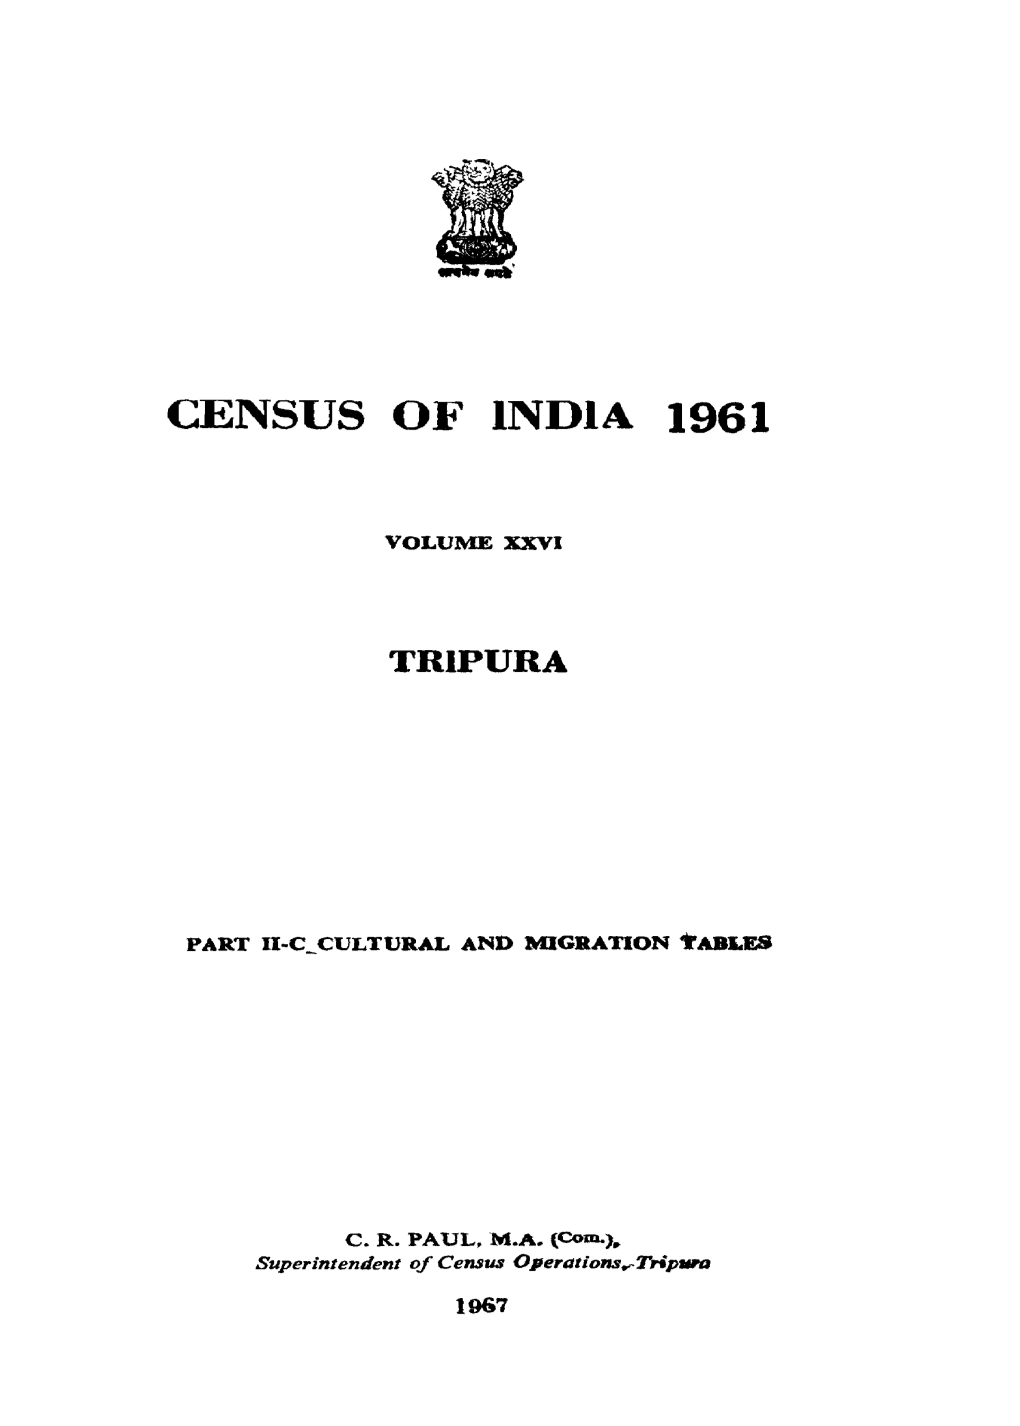 Cultural and Migration Tables, Part II-C, Vol-XXVI, Tripura